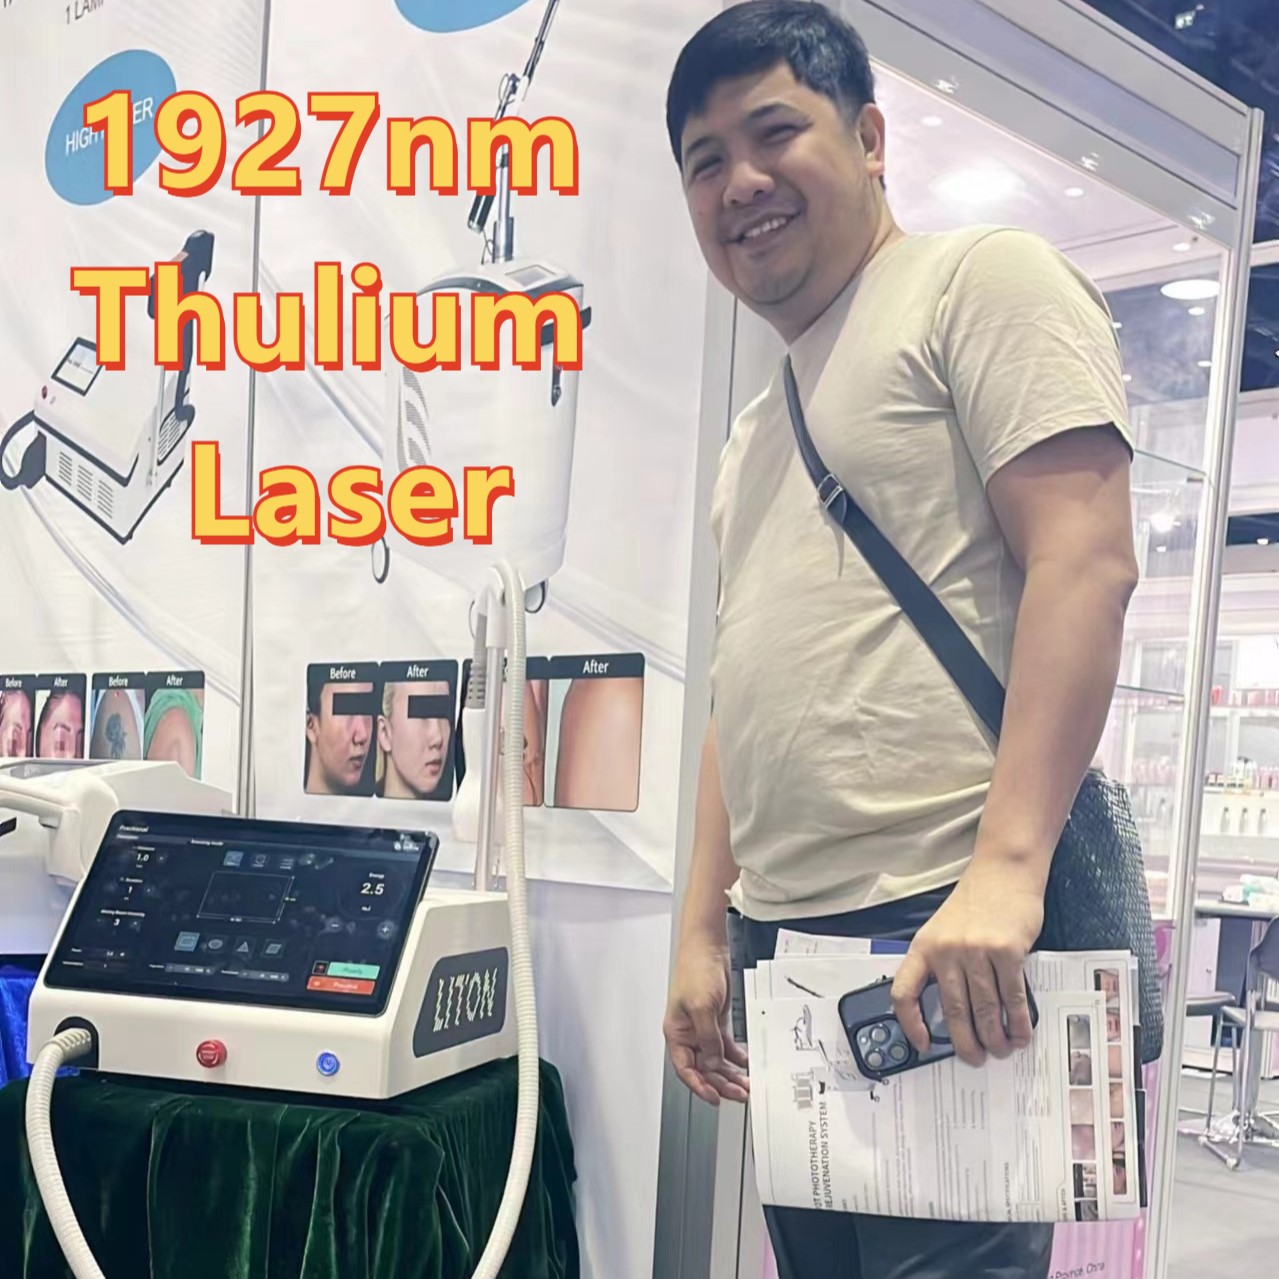 Thulium Laser at Thailand Exhibition